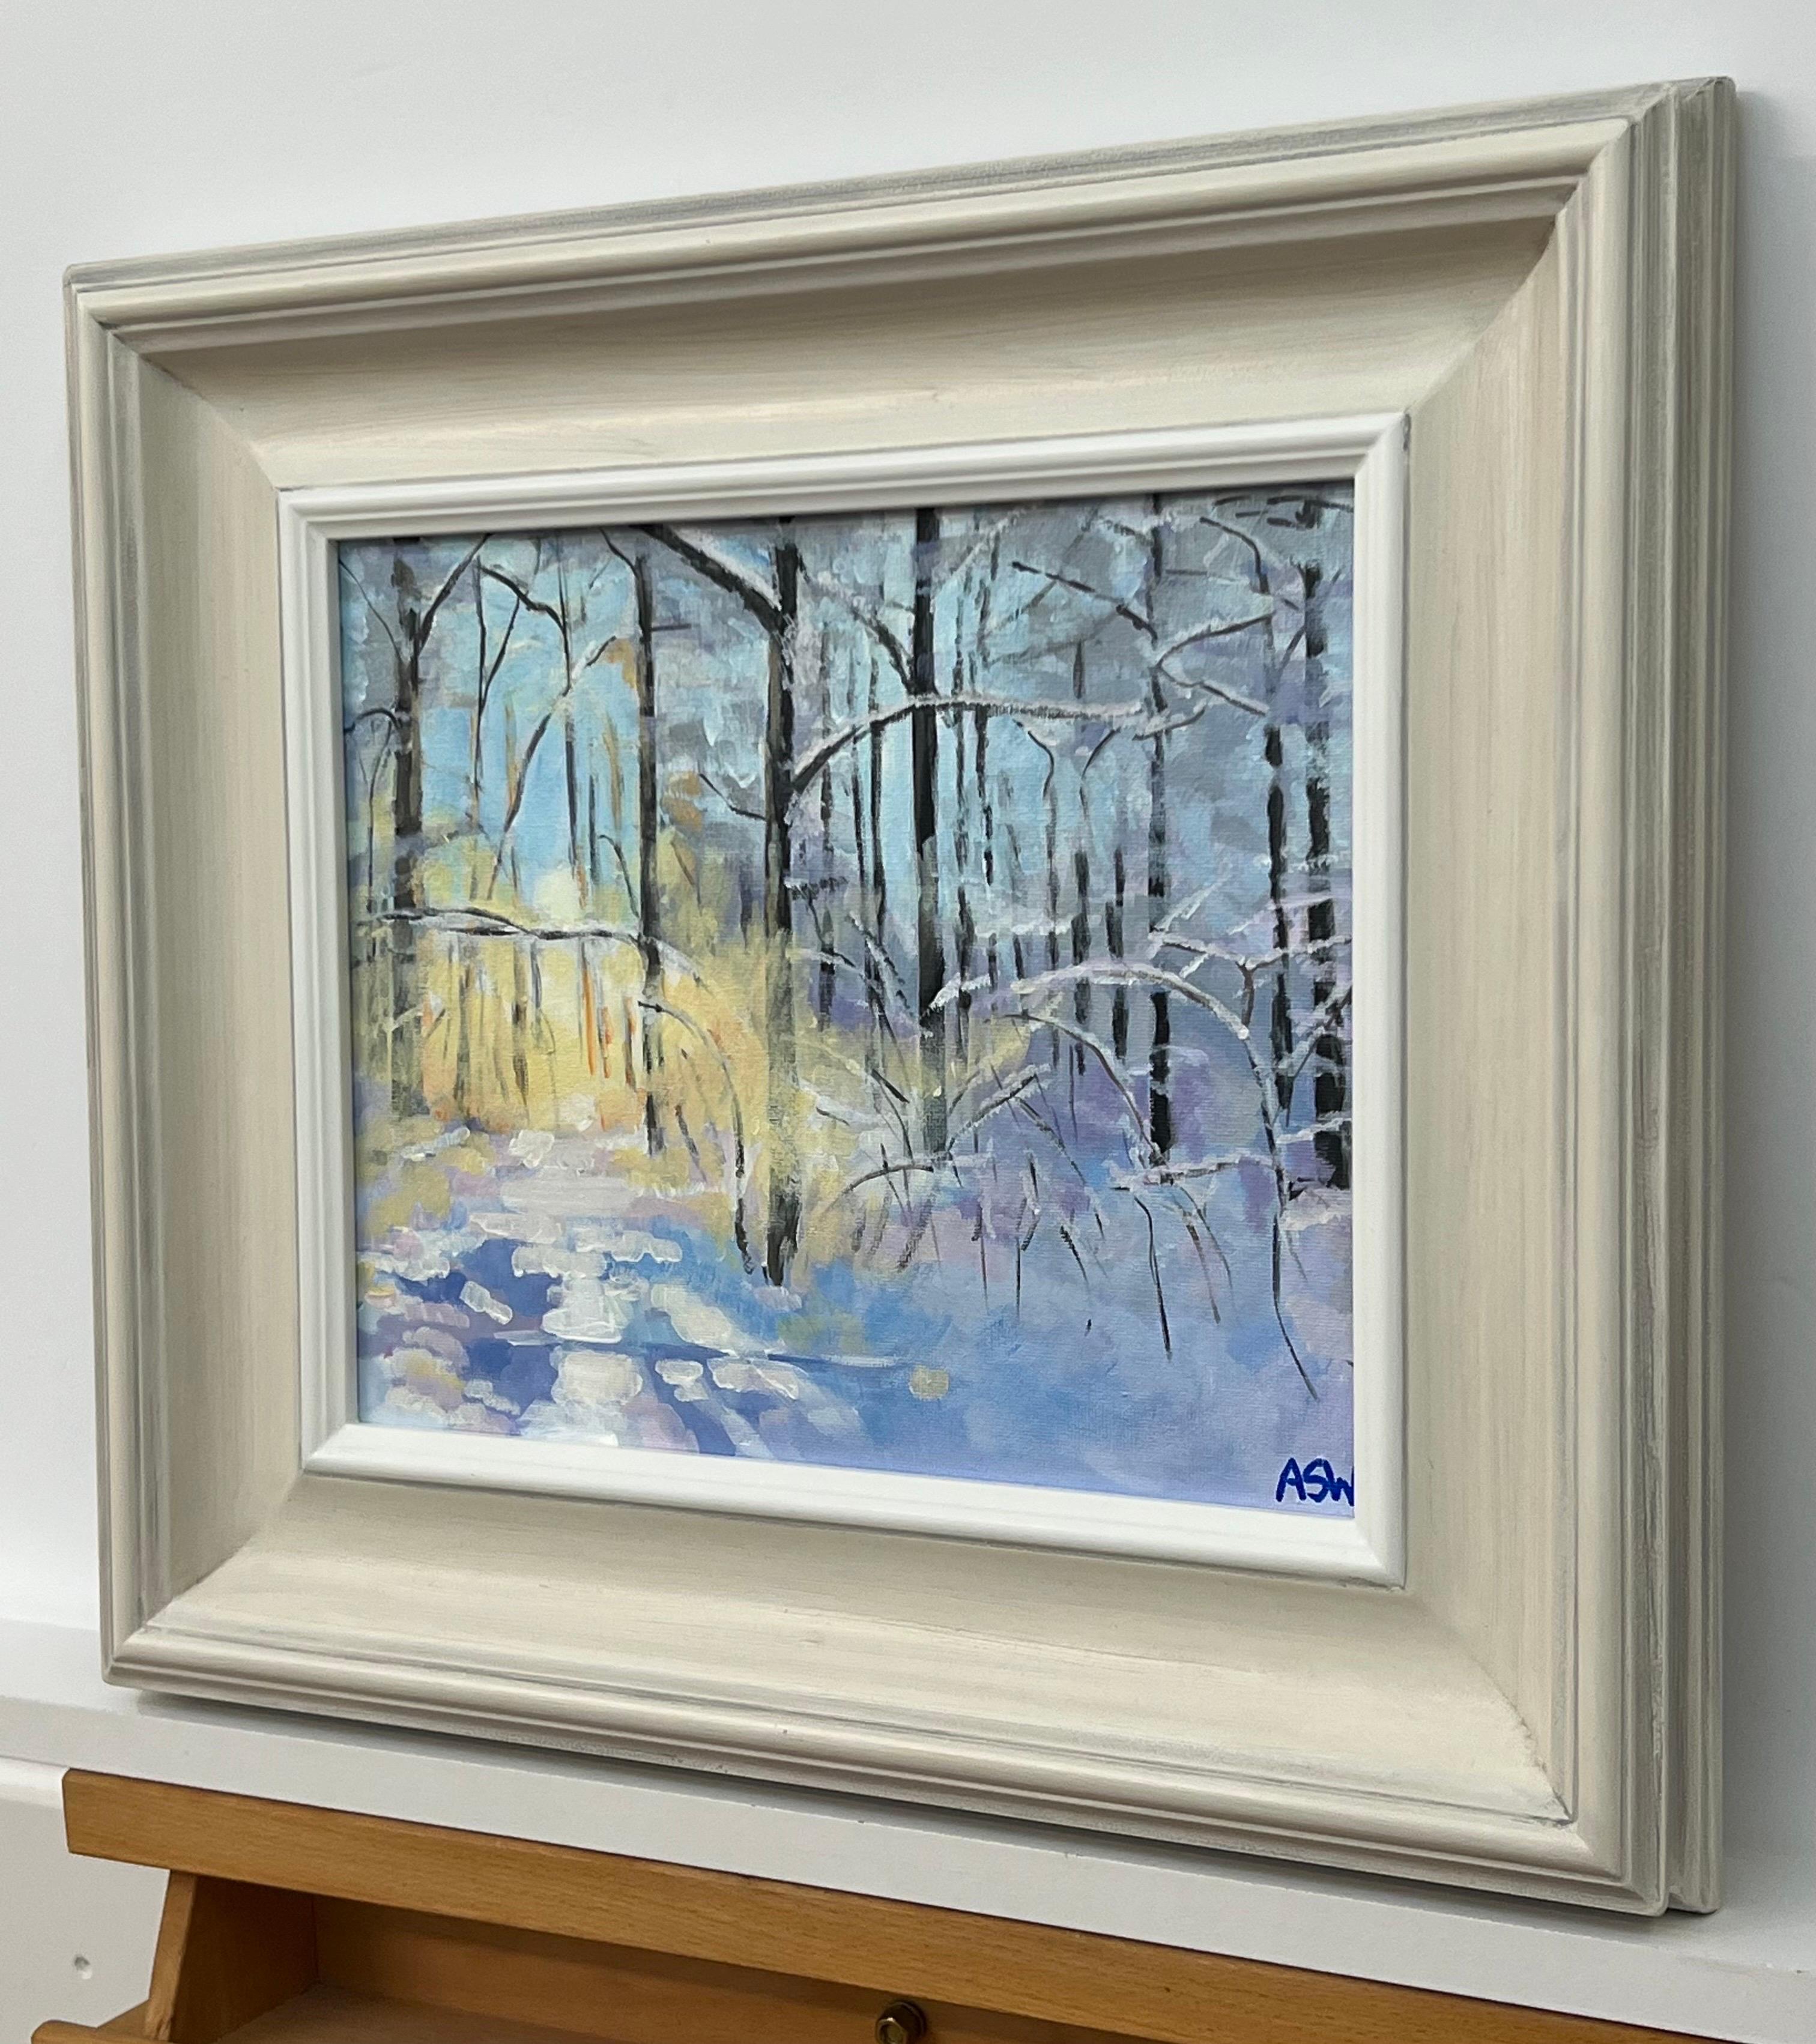 Impressionistische Winter-Schnee-Landschaftsmalerei eines Waldes in Zürich, Schweiz, von der führenden zeitgenössischen britischen Künstlerin Angela Wakefield. 

Kunst misst 12 x 10 Zoll 
Rahmen misst 18 x 16 Zoll 

Angela Wakefield war zweimal auf